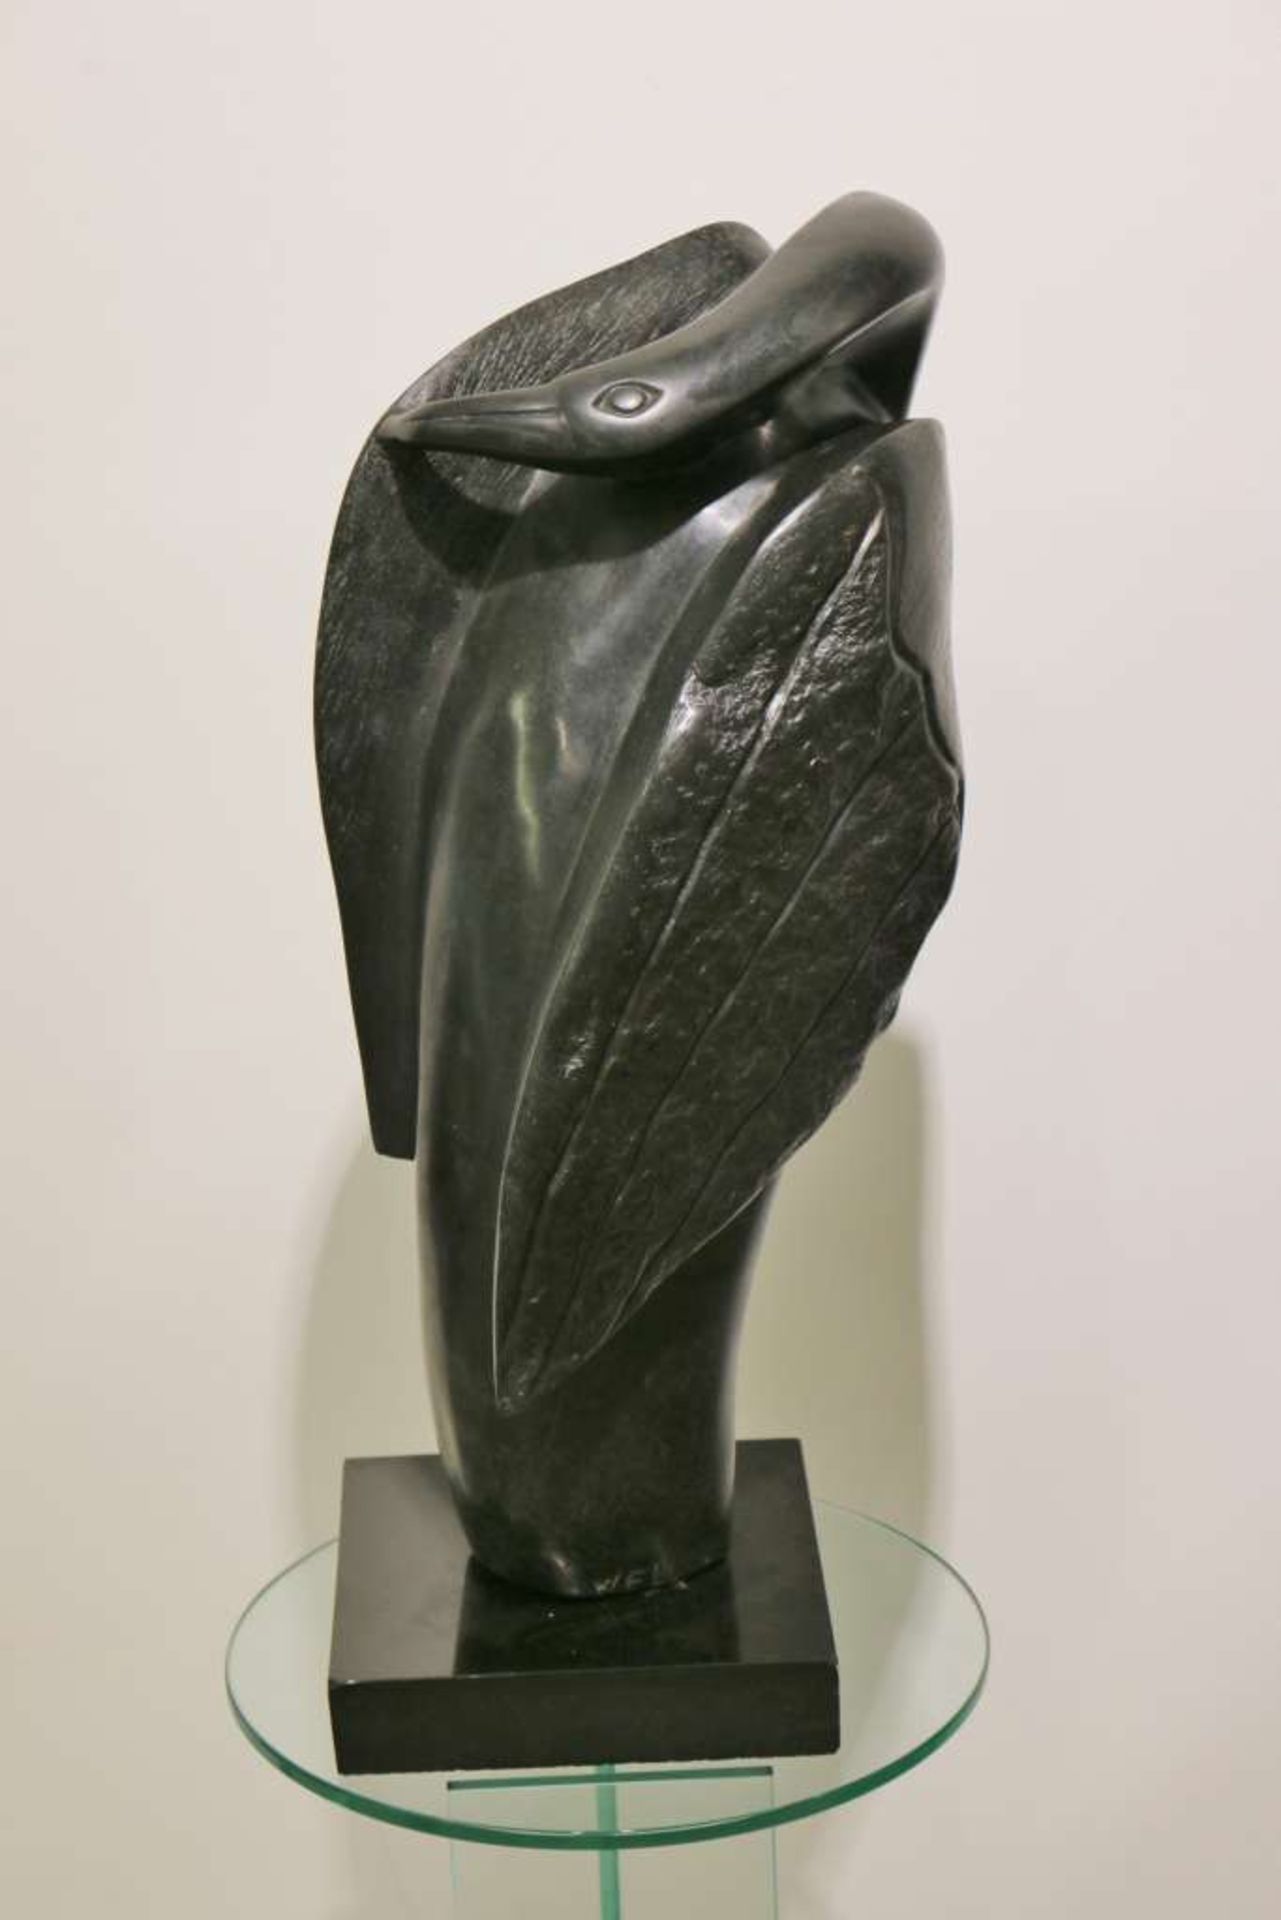 Shona-Skulptur, Simbabwe, 20. Jh., schlafender Vogel auf schwarzem Steinsockel, schwarzer